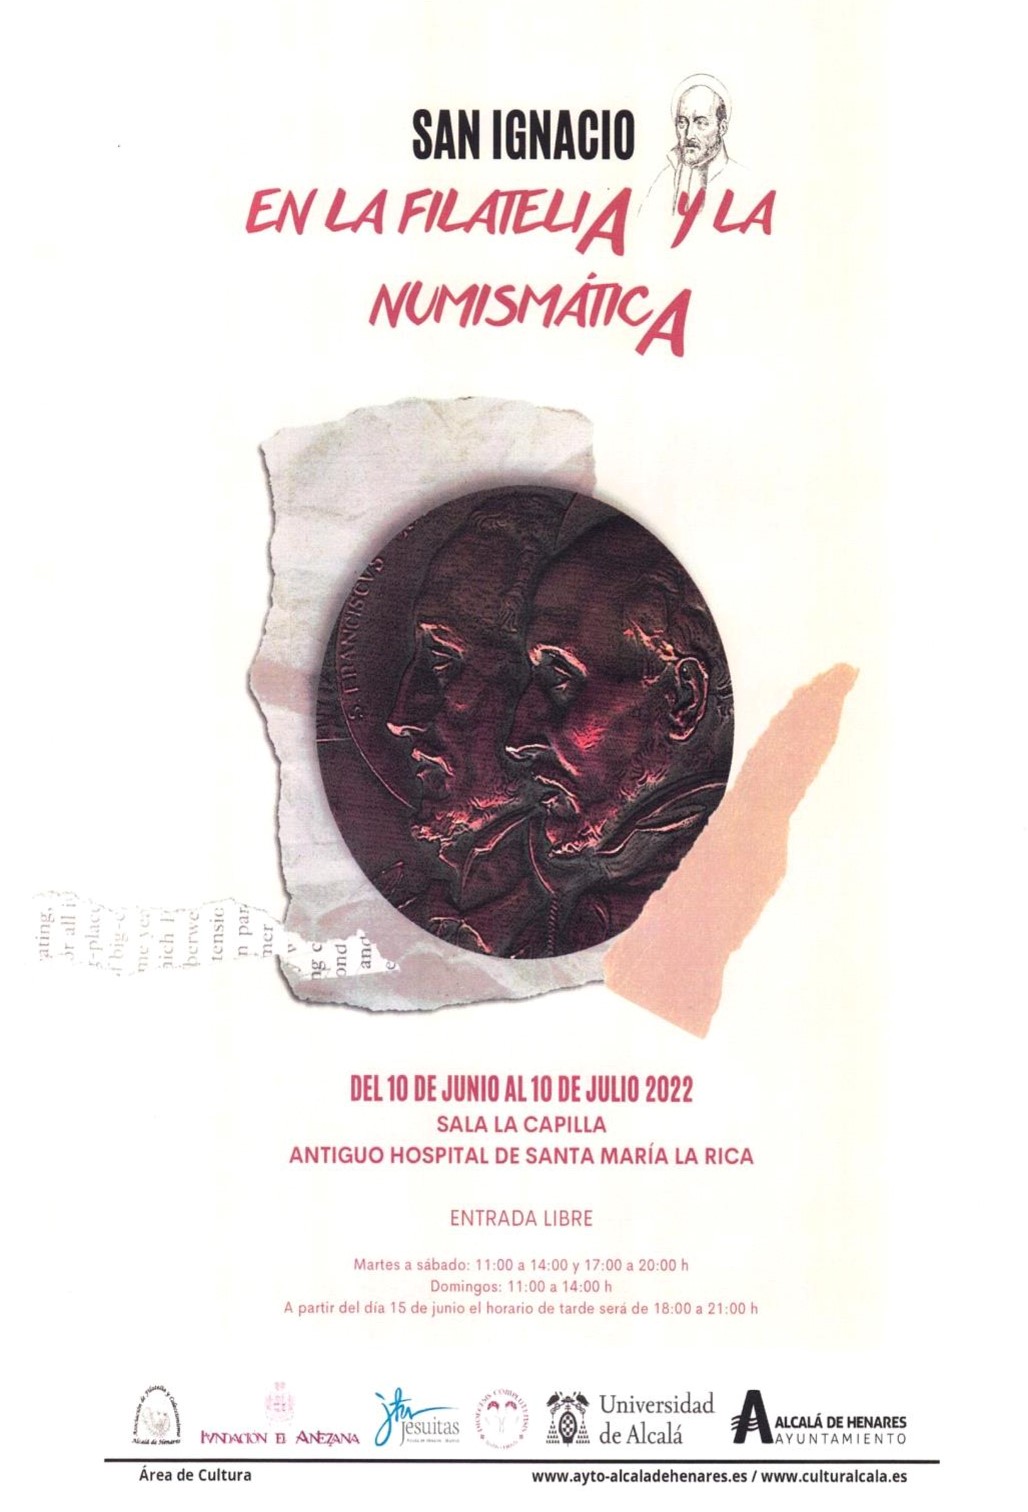 San Ignacio en la filatelia y la numismática, Alcalá de Henares